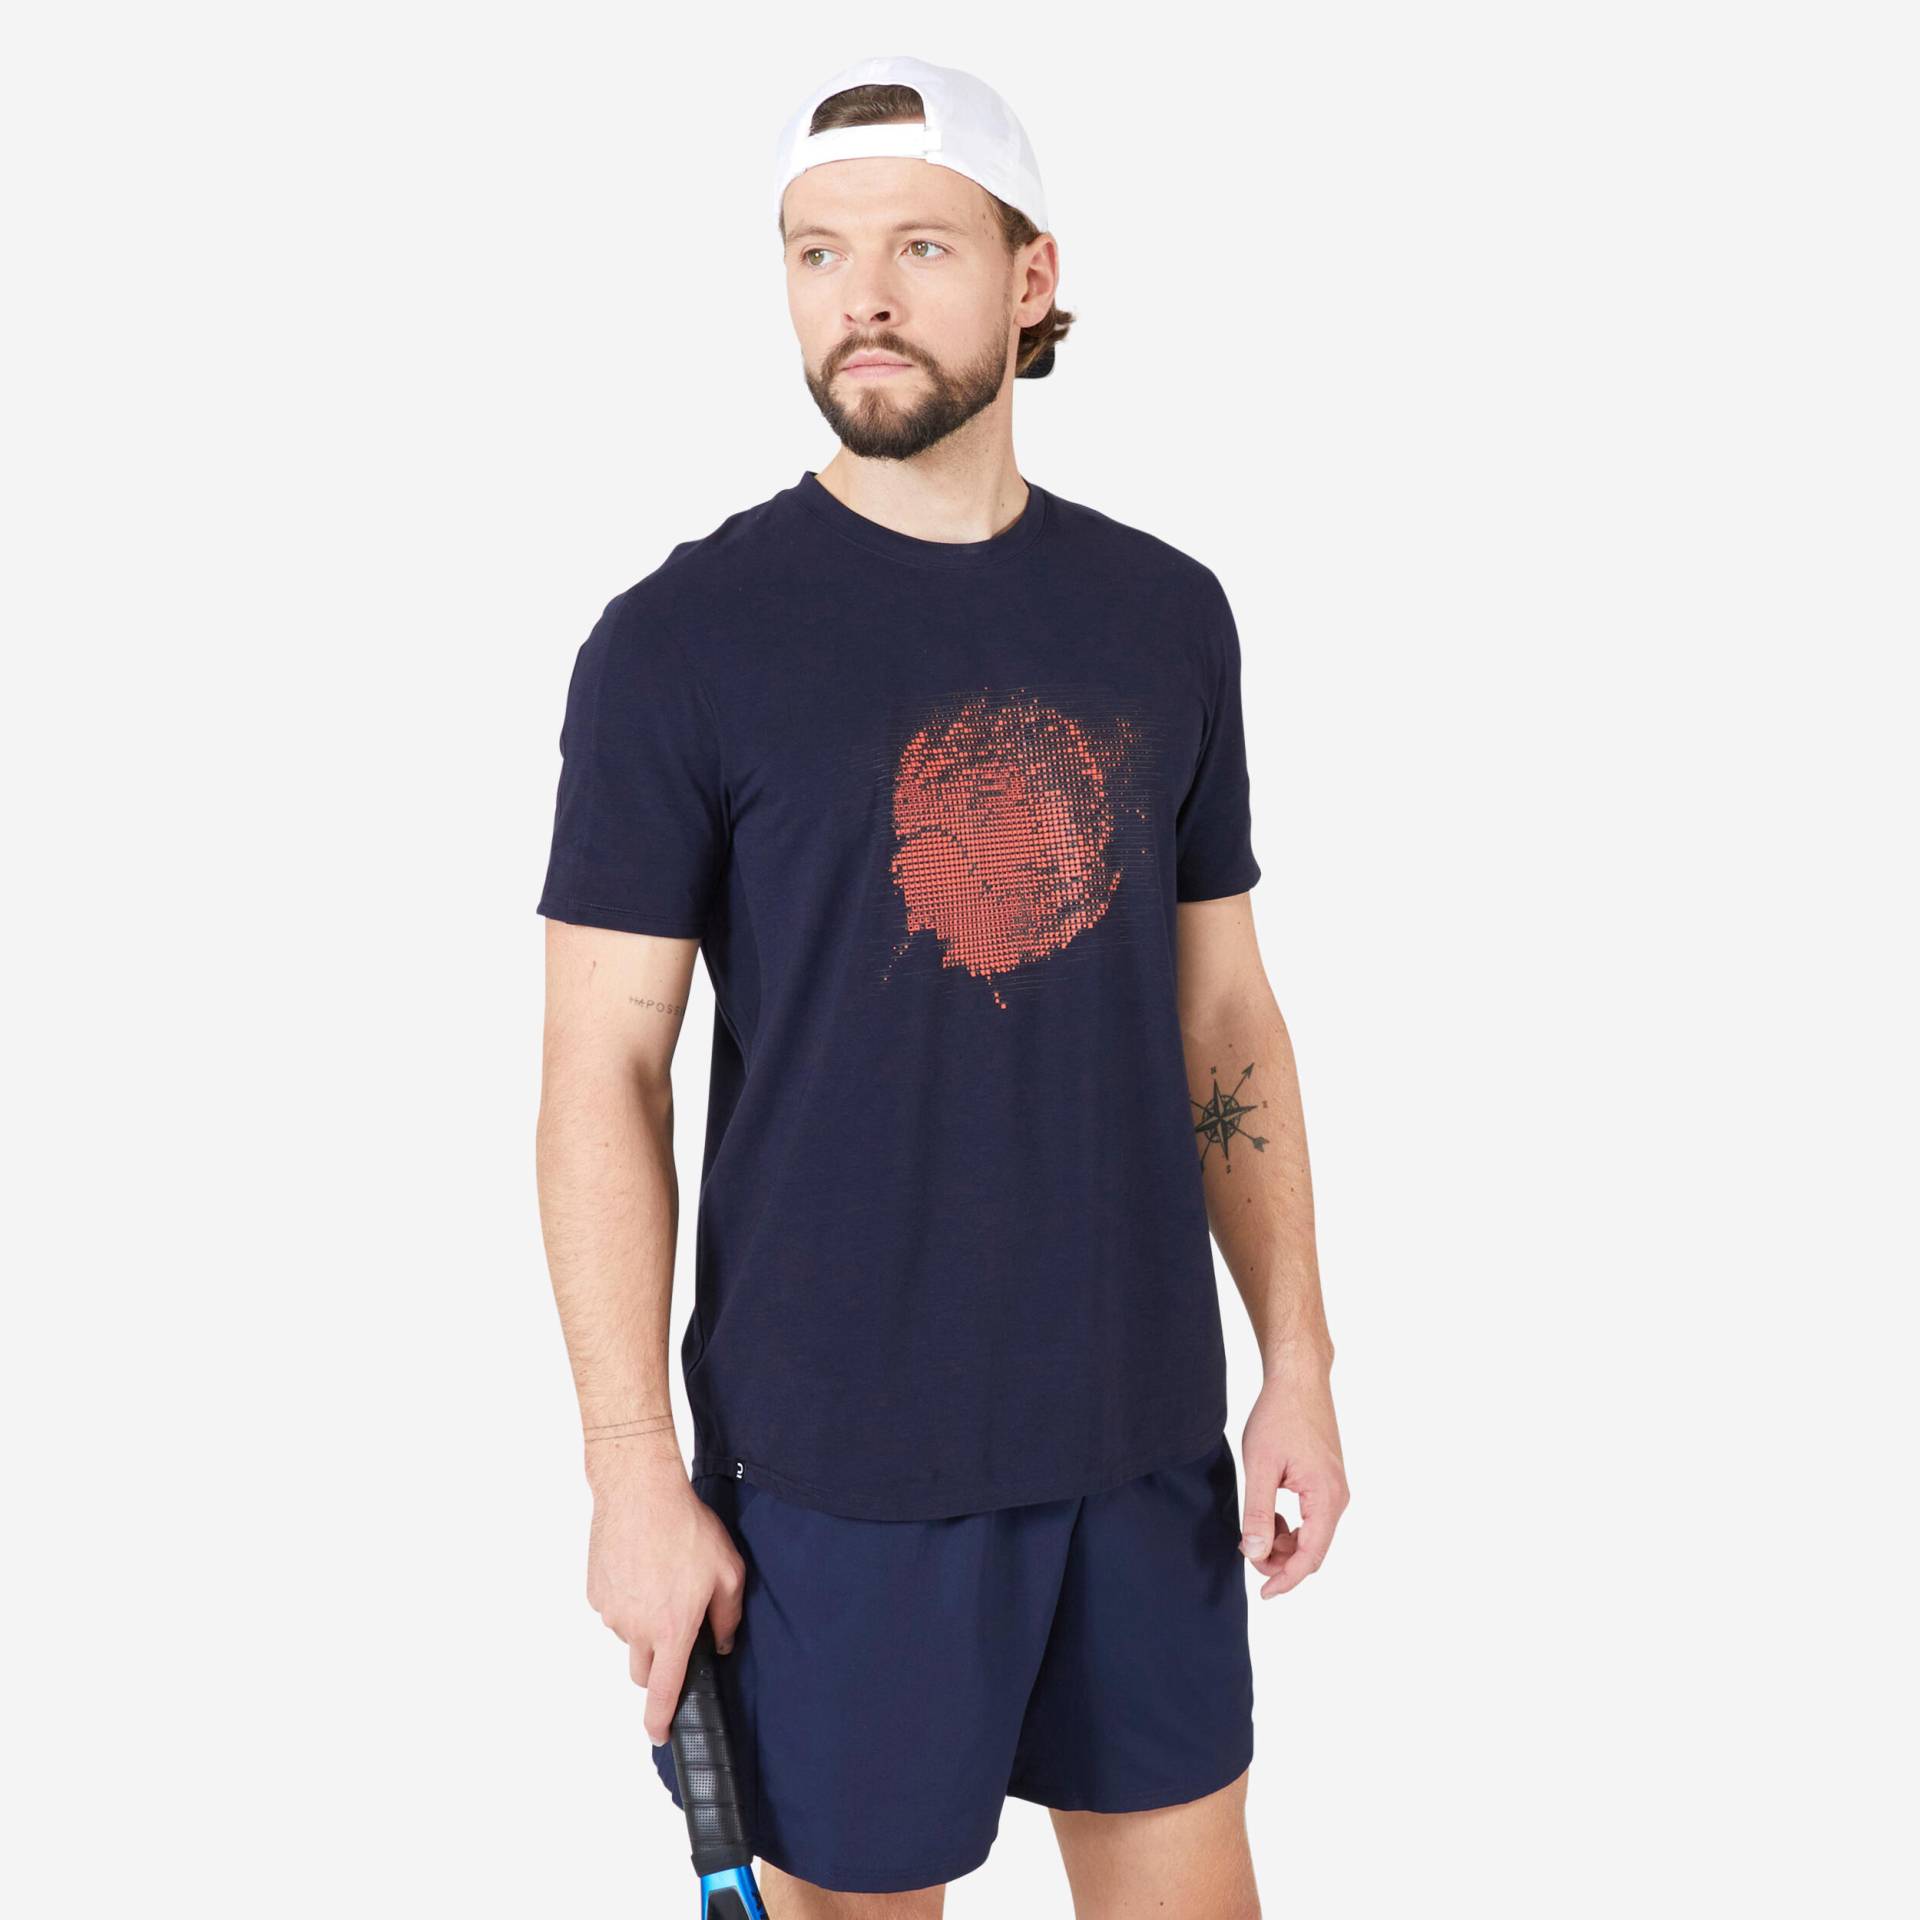 Tennis-Shirt Herren Soft TTS marineblau von ARTENGO